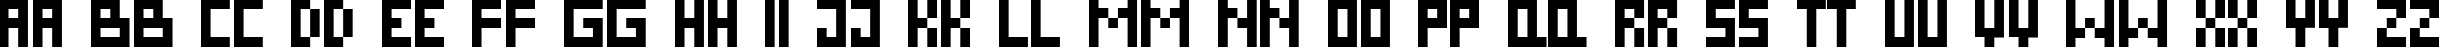 Пример написания английского алфавита шрифтом DS Pixel Cyr